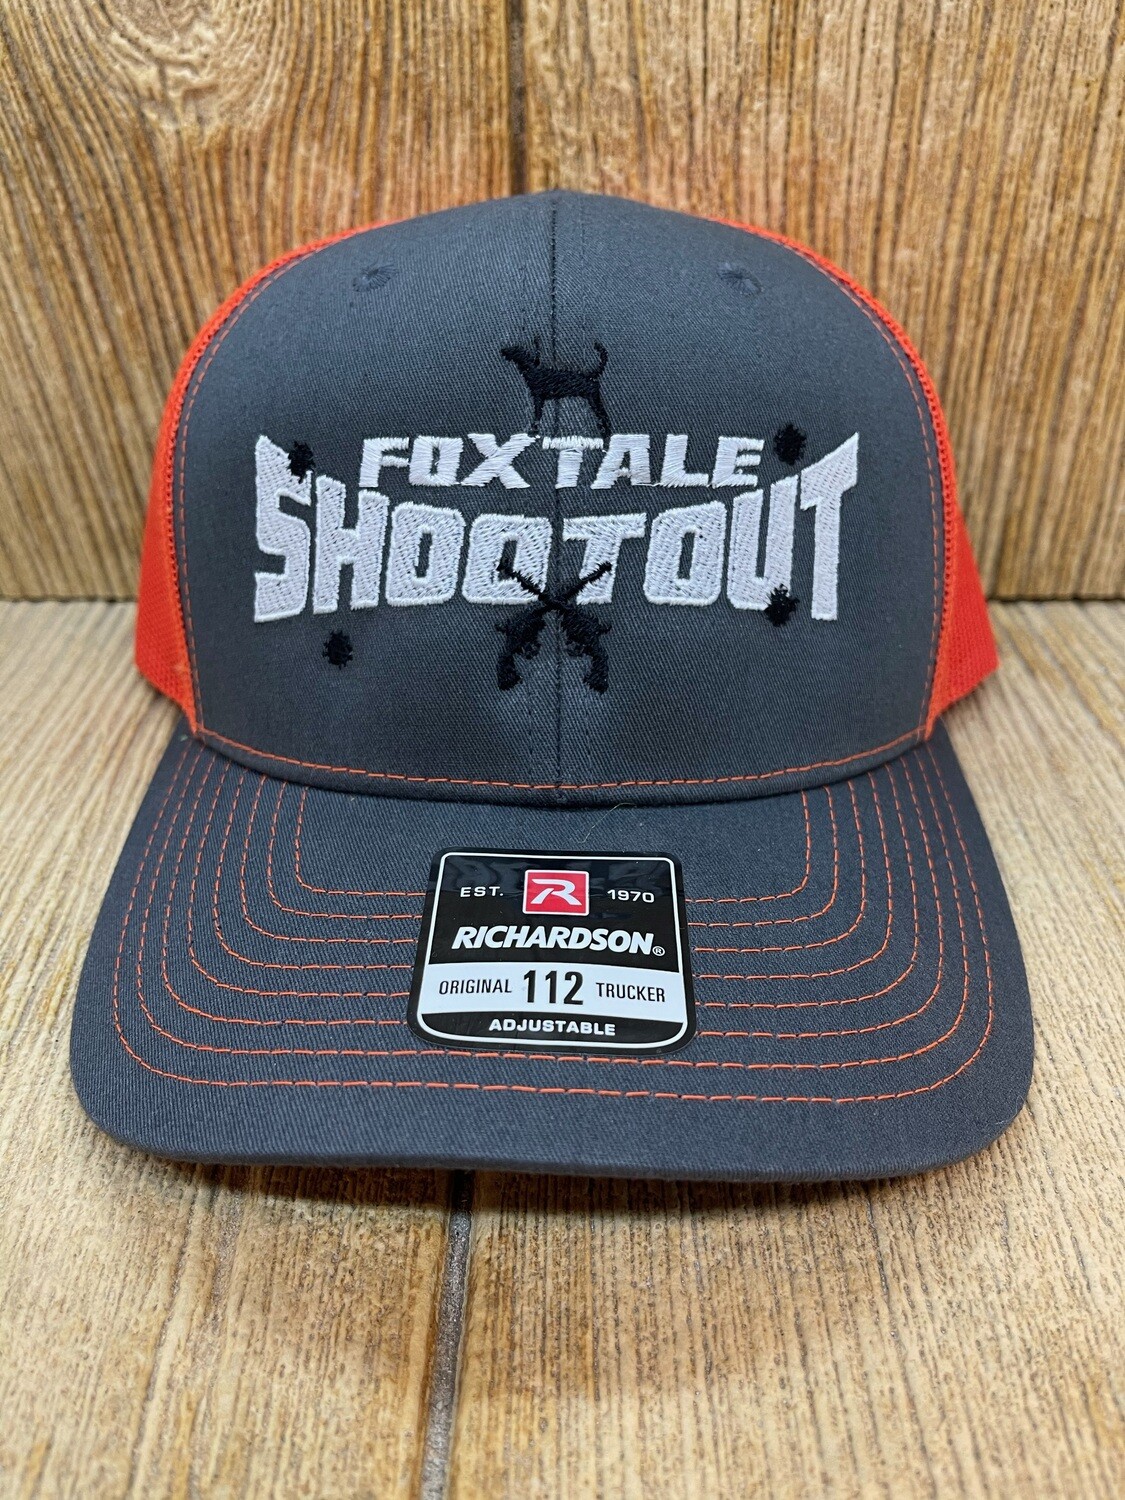 Fox Tale Shootout Adjustable Hat - Graphite/Orange